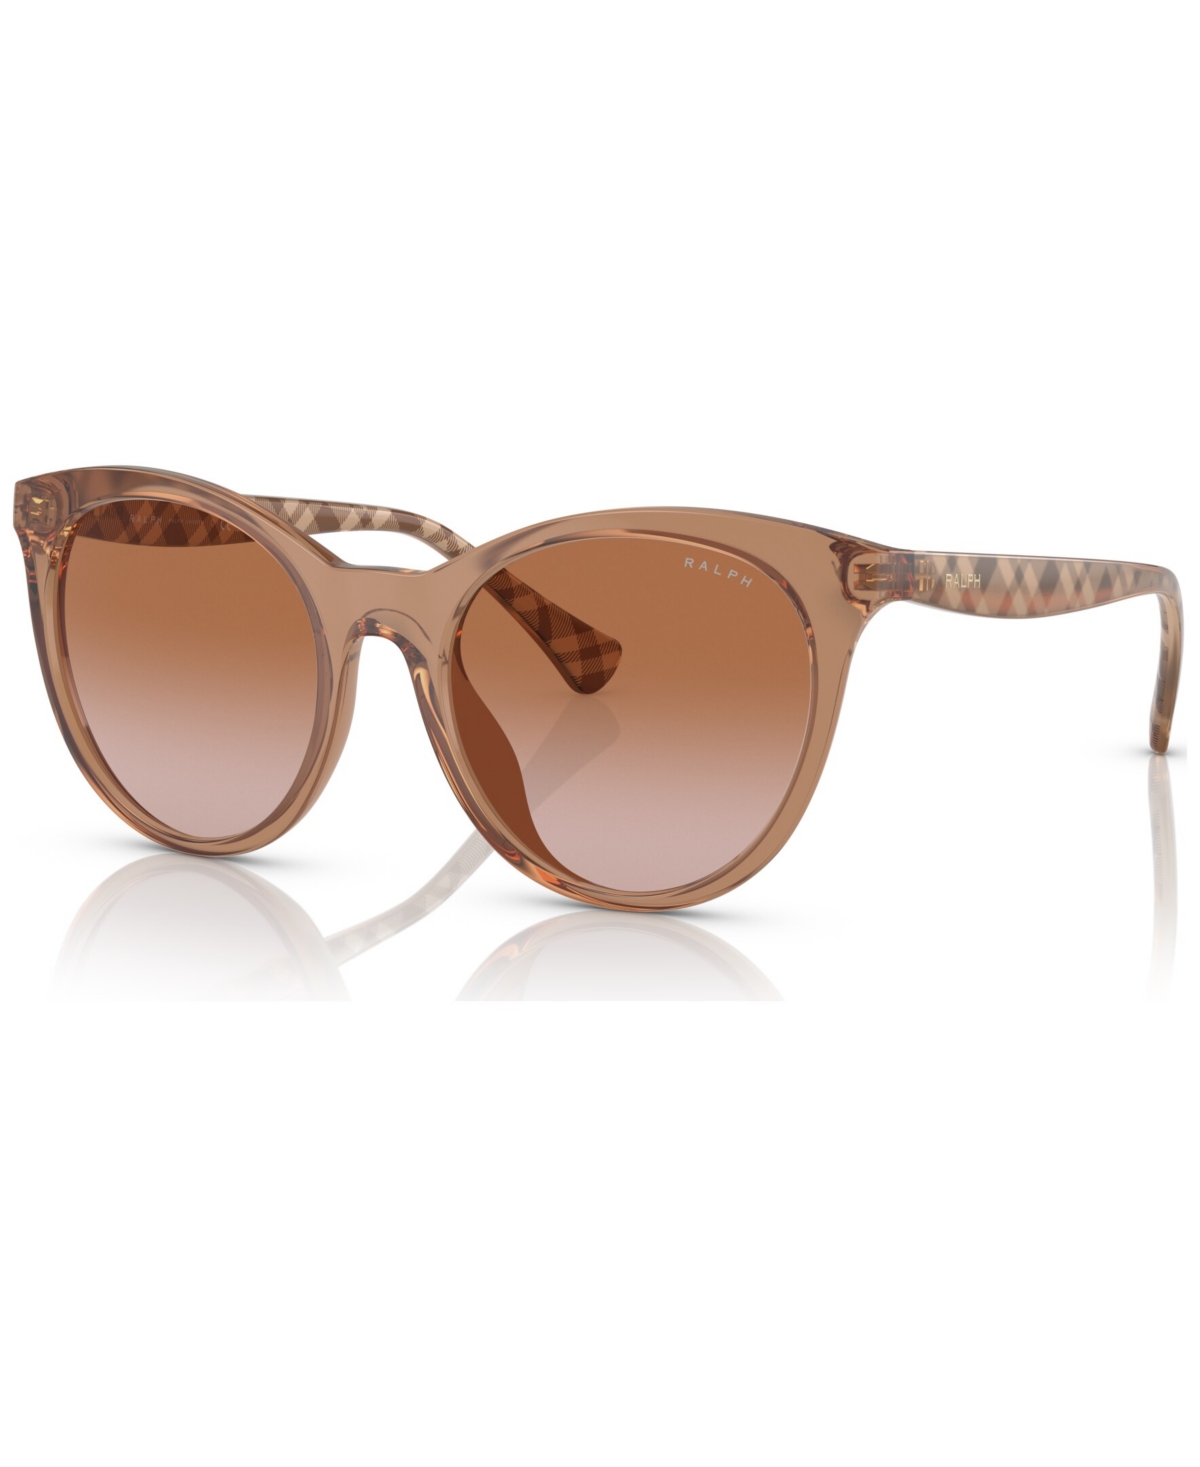 Women's Sunglasses, RA5294U53-y - Shiny Transparent Caramel